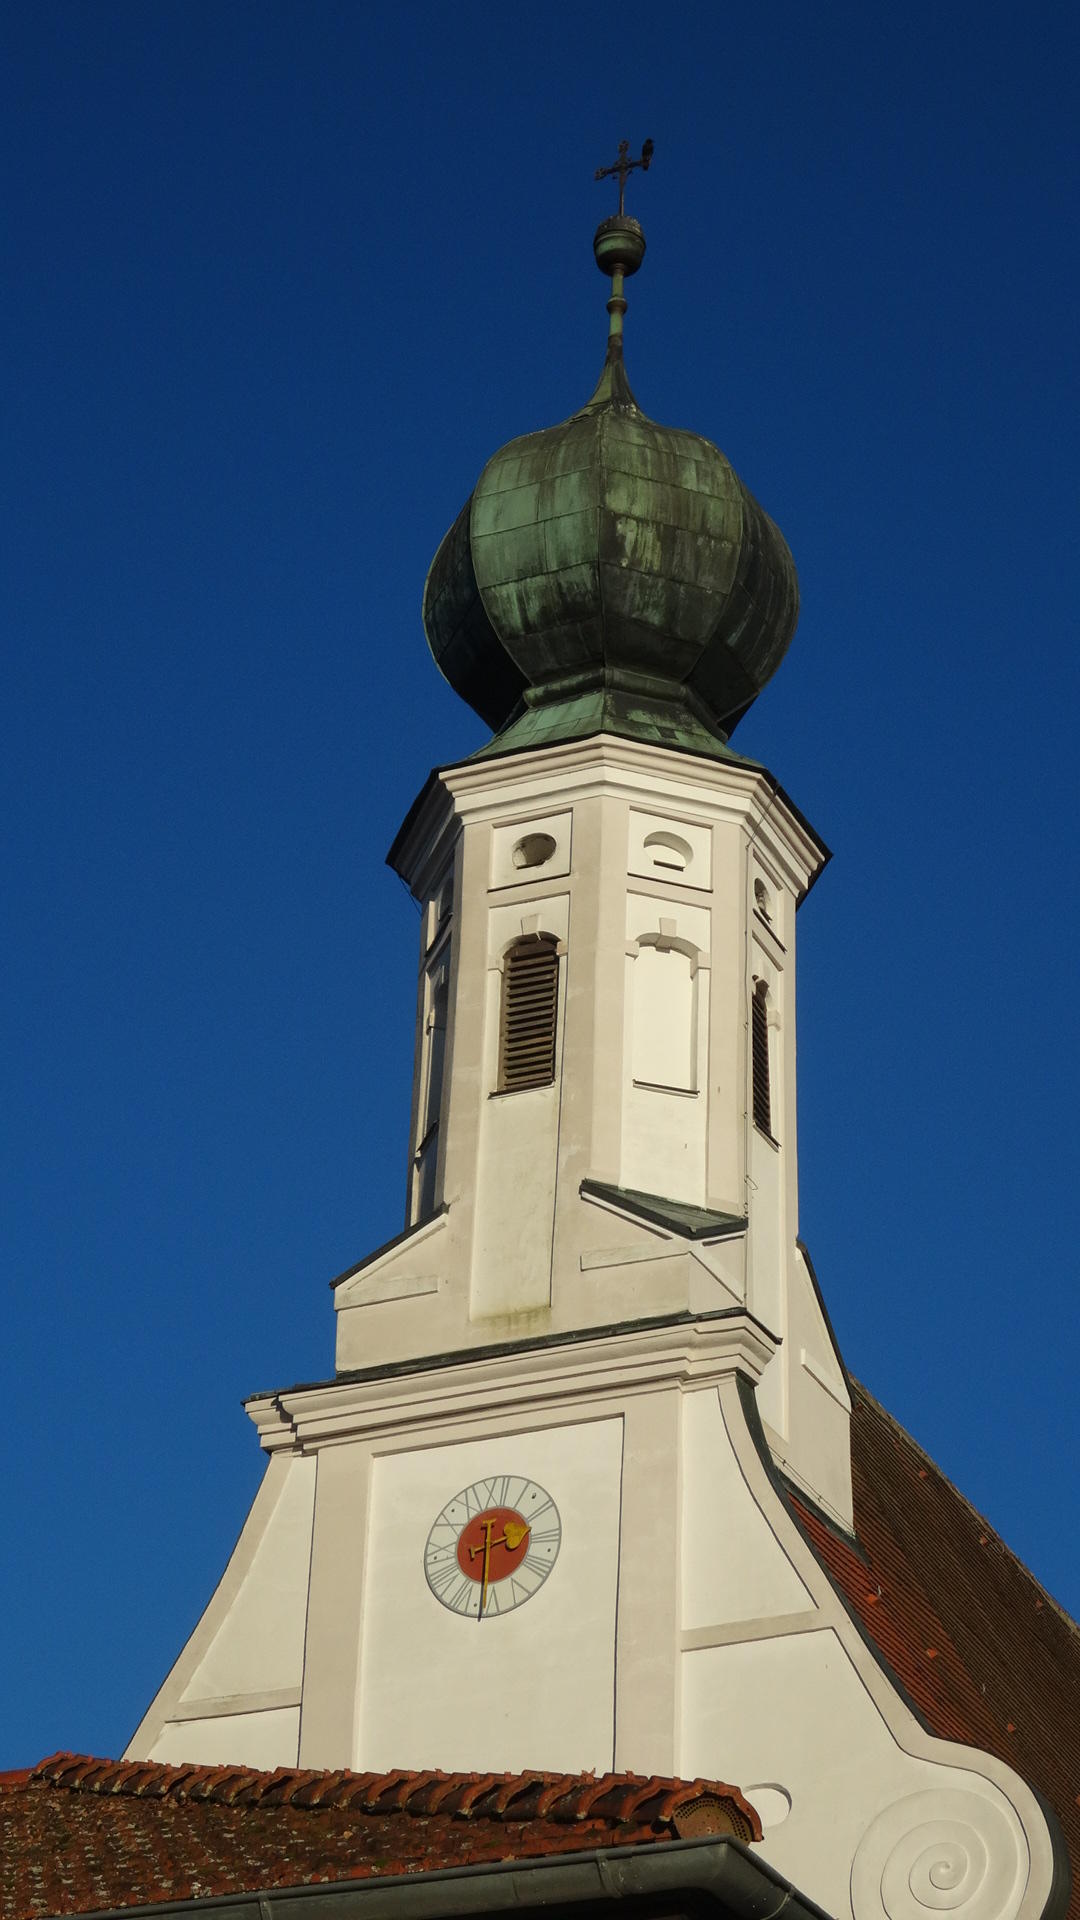 Glockenturm Marktkirche